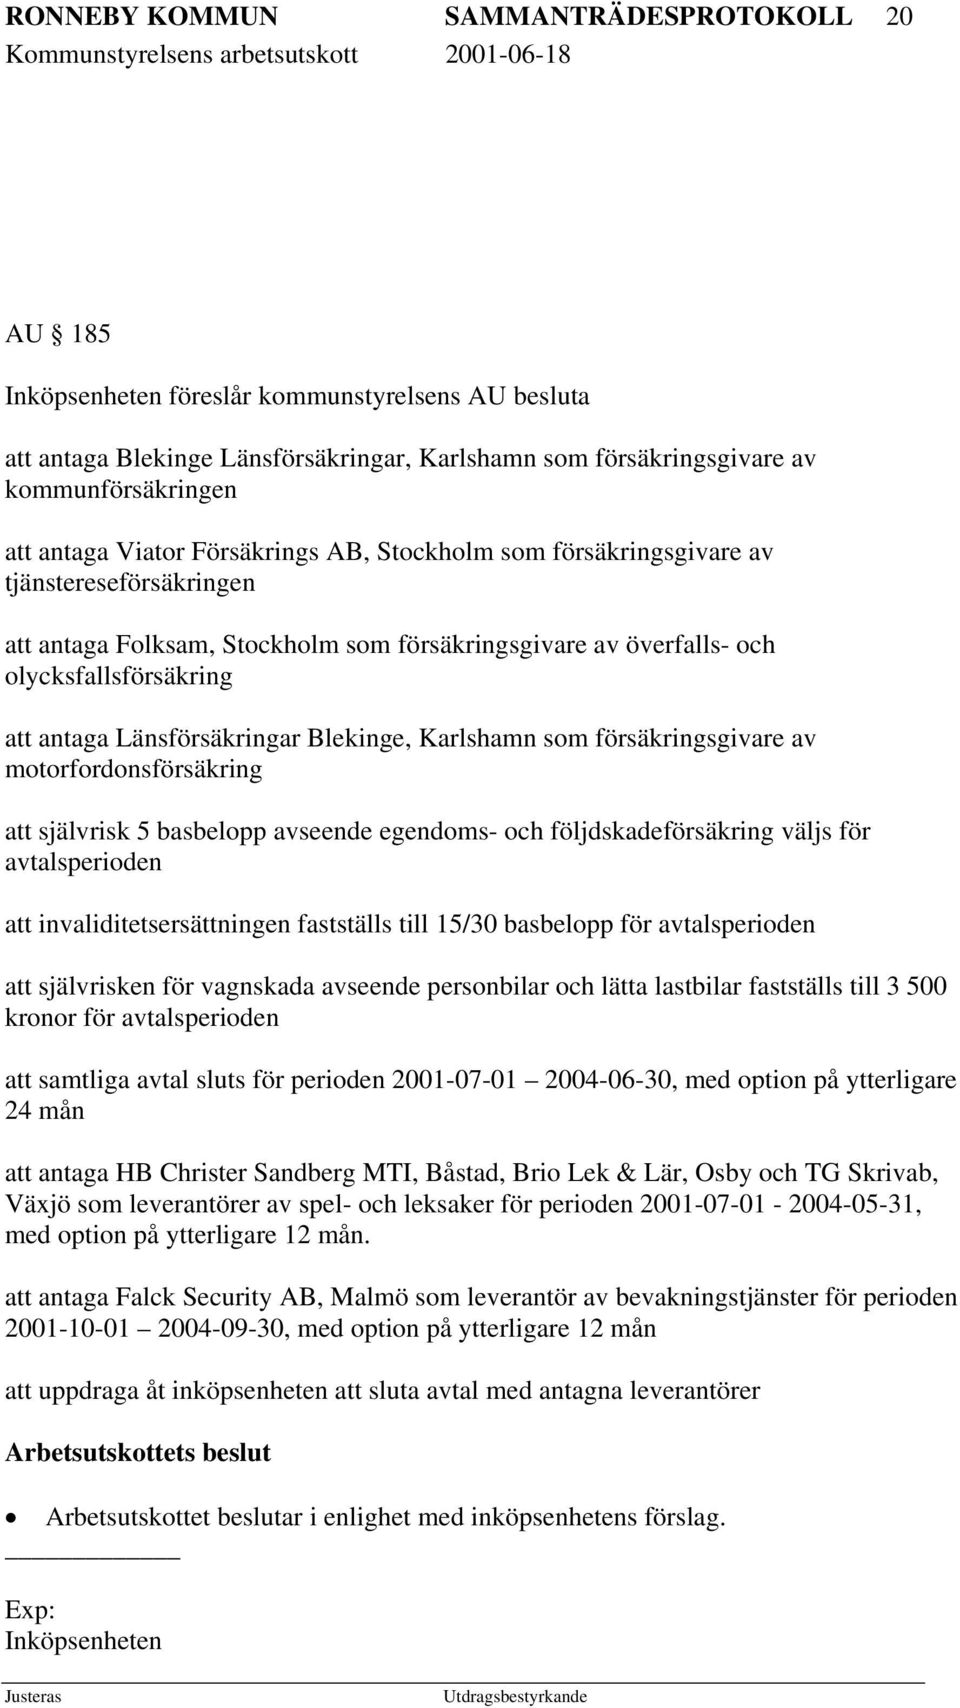 Länsförsäkringar Blekinge, Karlshamn som försäkringsgivare av motorfordonsförsäkring att självrisk 5 basbelopp avseende egendoms- och följdskadeförsäkring väljs för avtalsperioden att